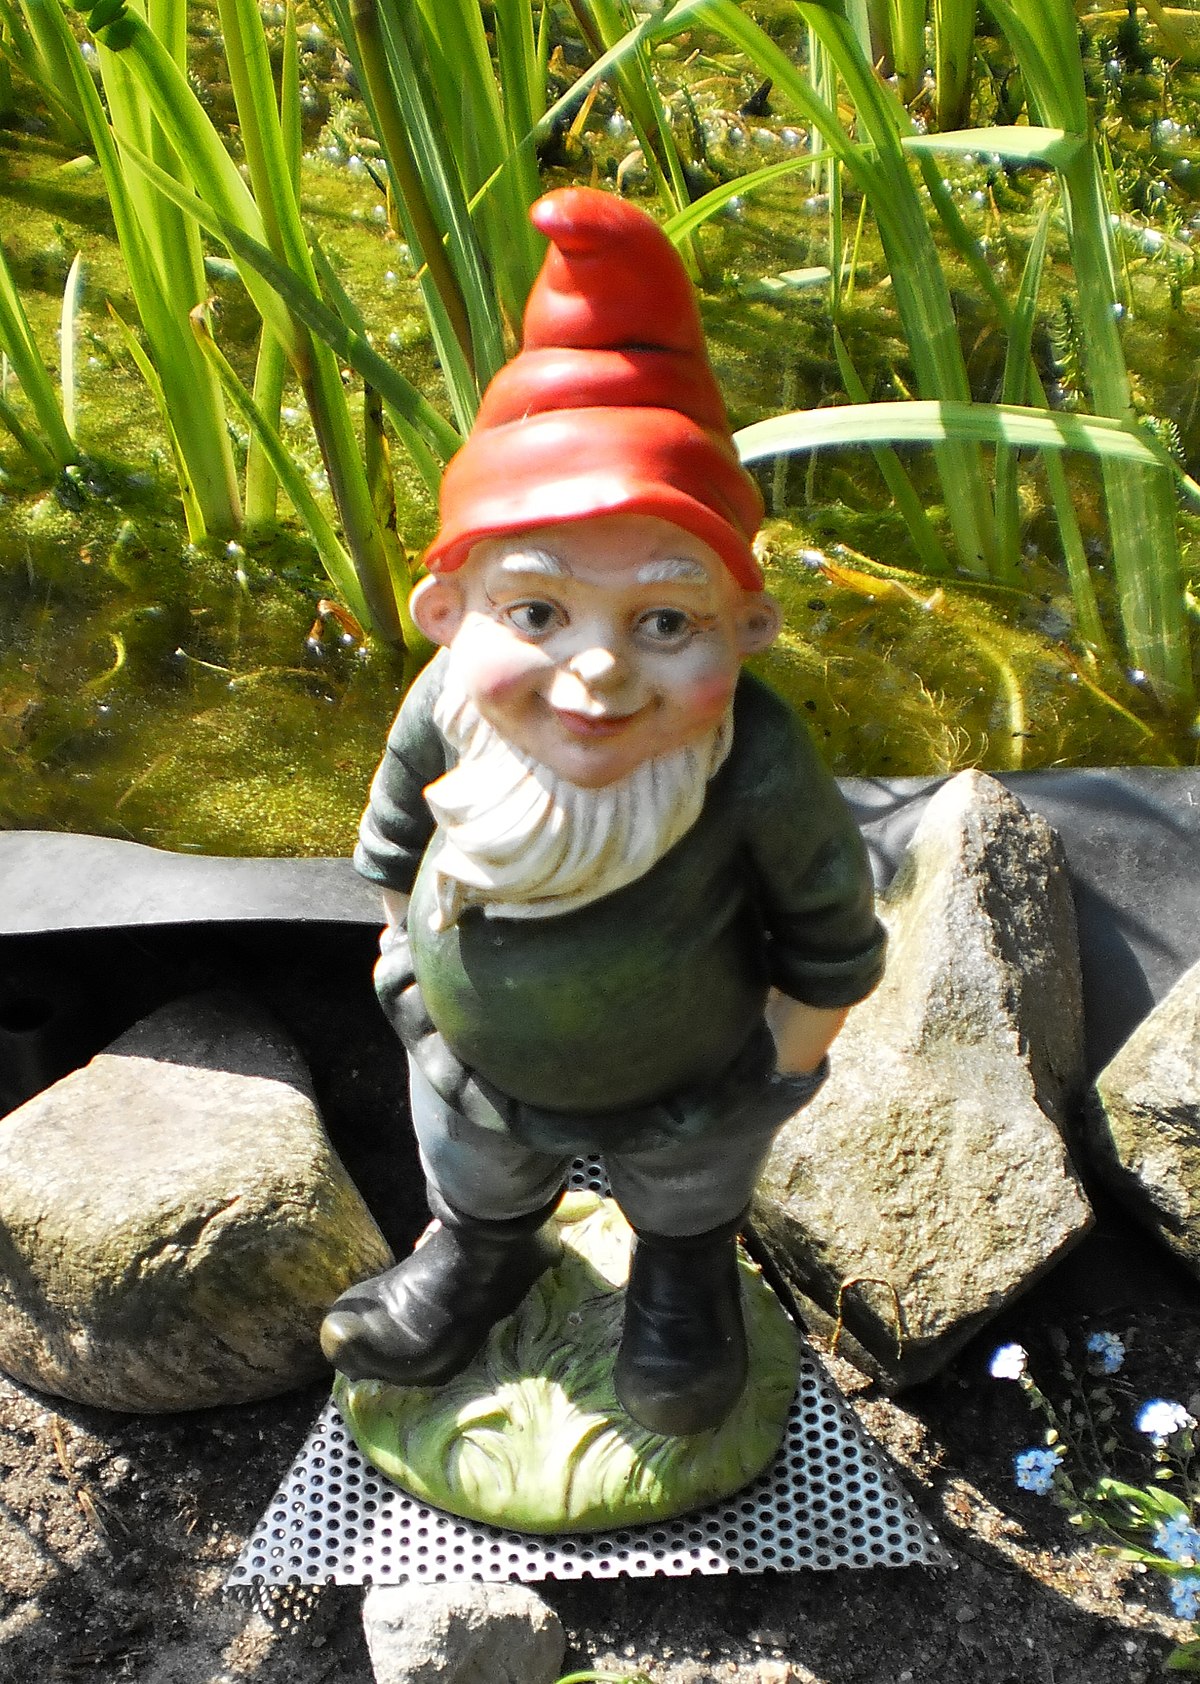 Garden gnome - Wikipedia